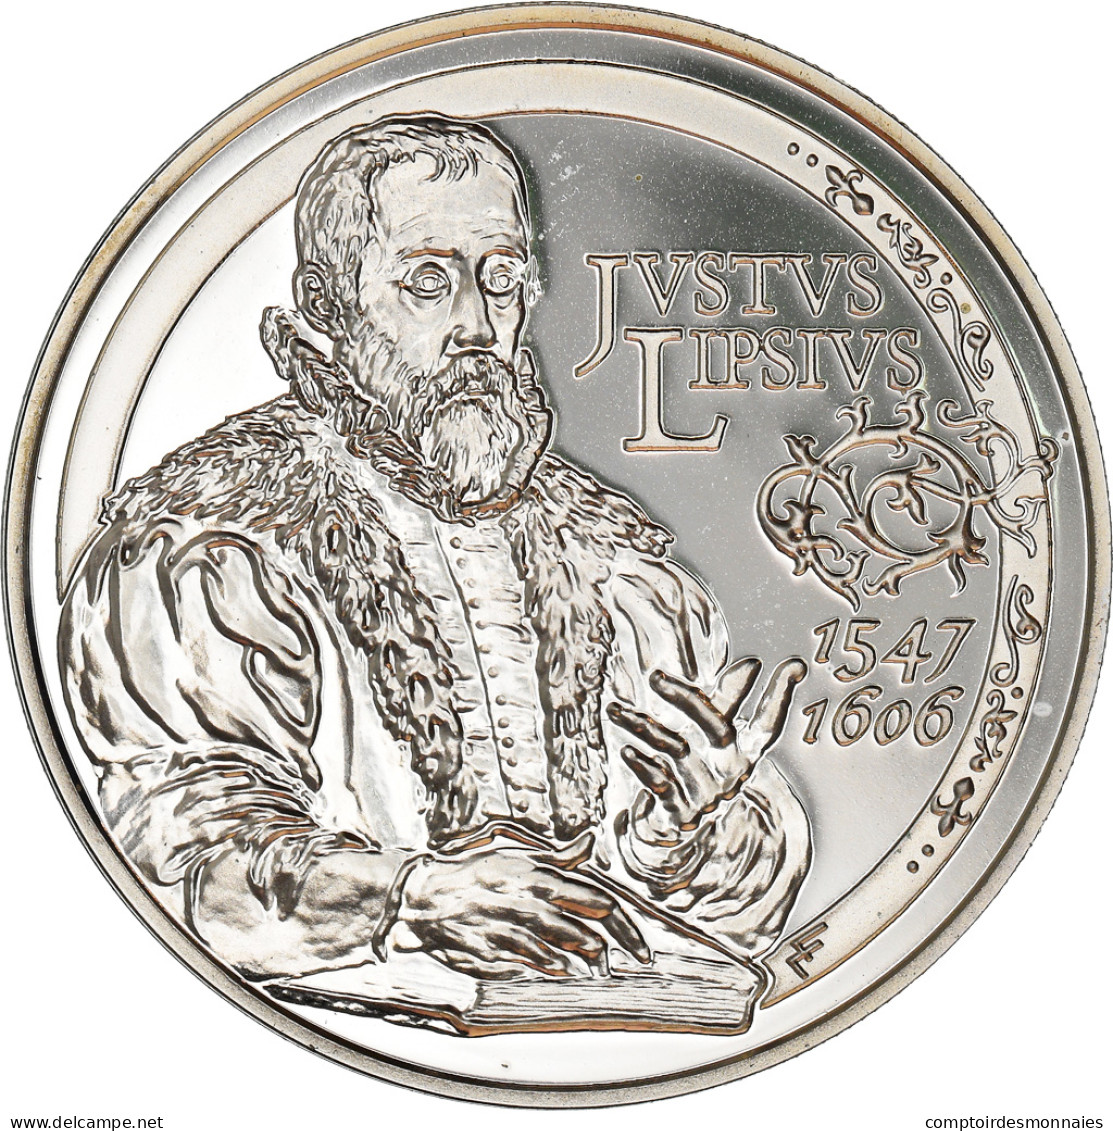 Belgique, 10 Euro, Justus Lipsius, 2006, SPL, Argent, KM:255 - Belgium